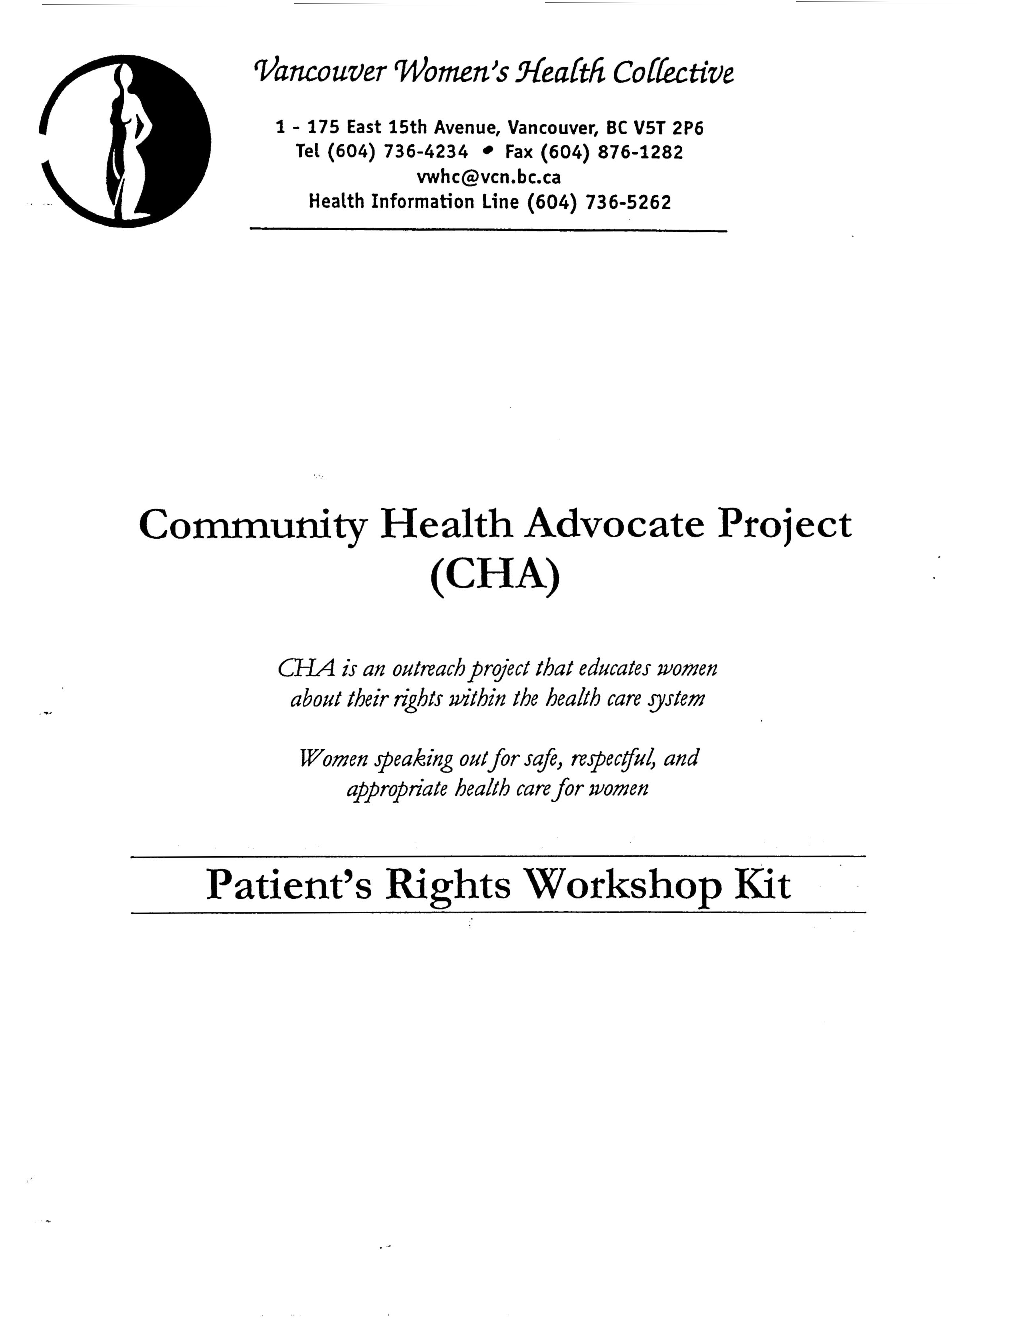 Patient's Rights Workshop Kit